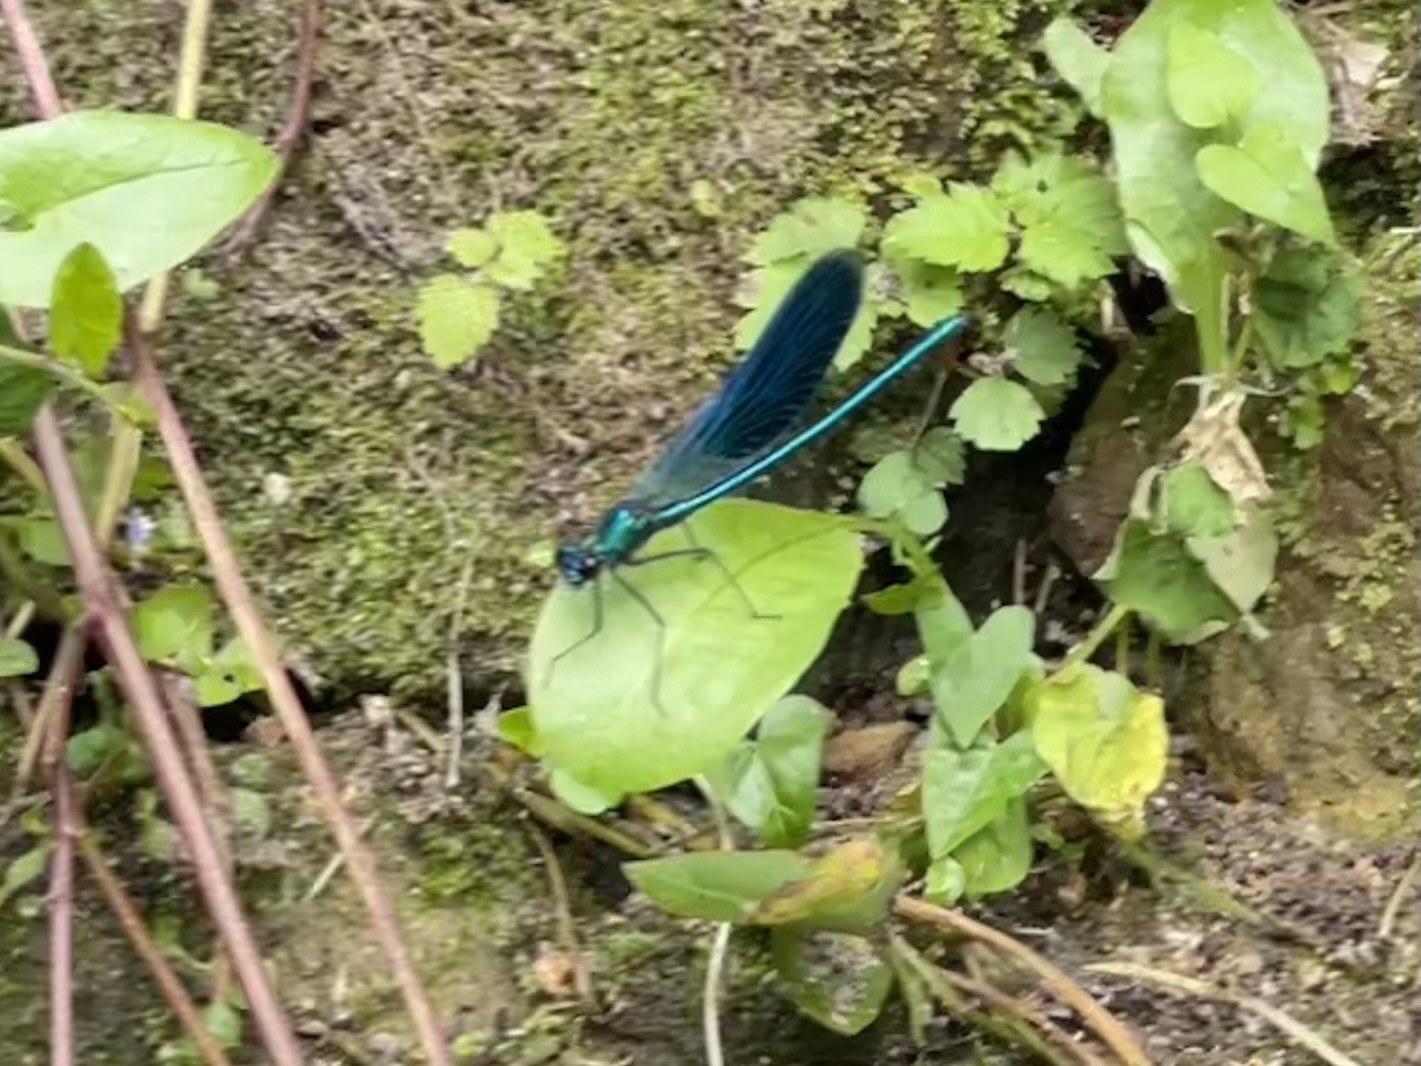 Eine blaue Libelle, die auf einem grünen Blatt hing, umgeben von kleinen Pflanzen und Moos auf einer Schmutzoberfläche.